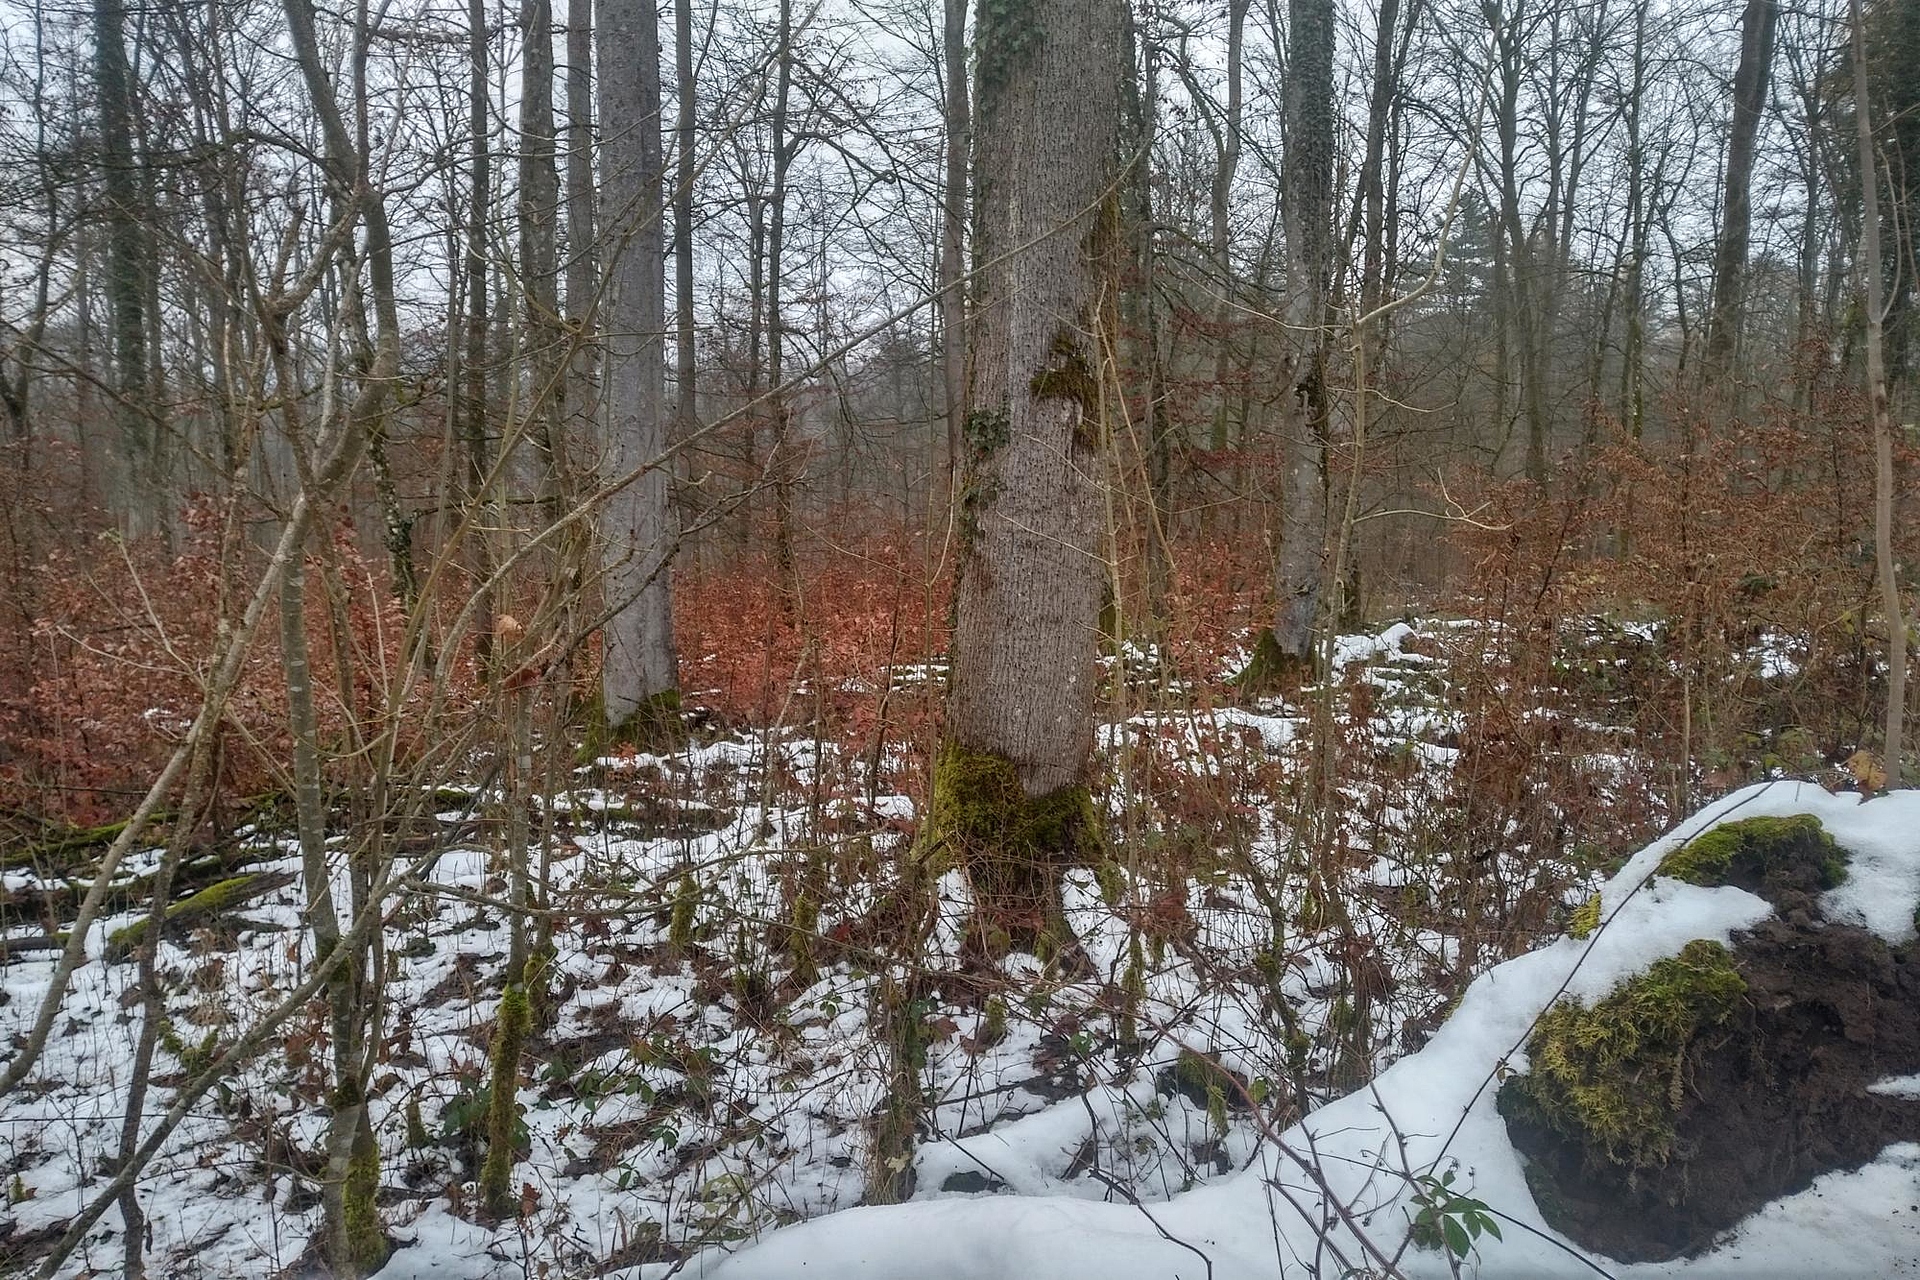 Das Foto zeigt den Blick auf die Untersuchungsfläche Schotten in Hessen aufgenommen im Winter. Der Bestand in ebener Lage zeichnet sich durch zahlreiche dicke Eschen aus. Es gibt einen ausgeprägten Zwischenstand und üppige Verjüngung. Die Bodenvegetation ist weitgehend zugeschneit.